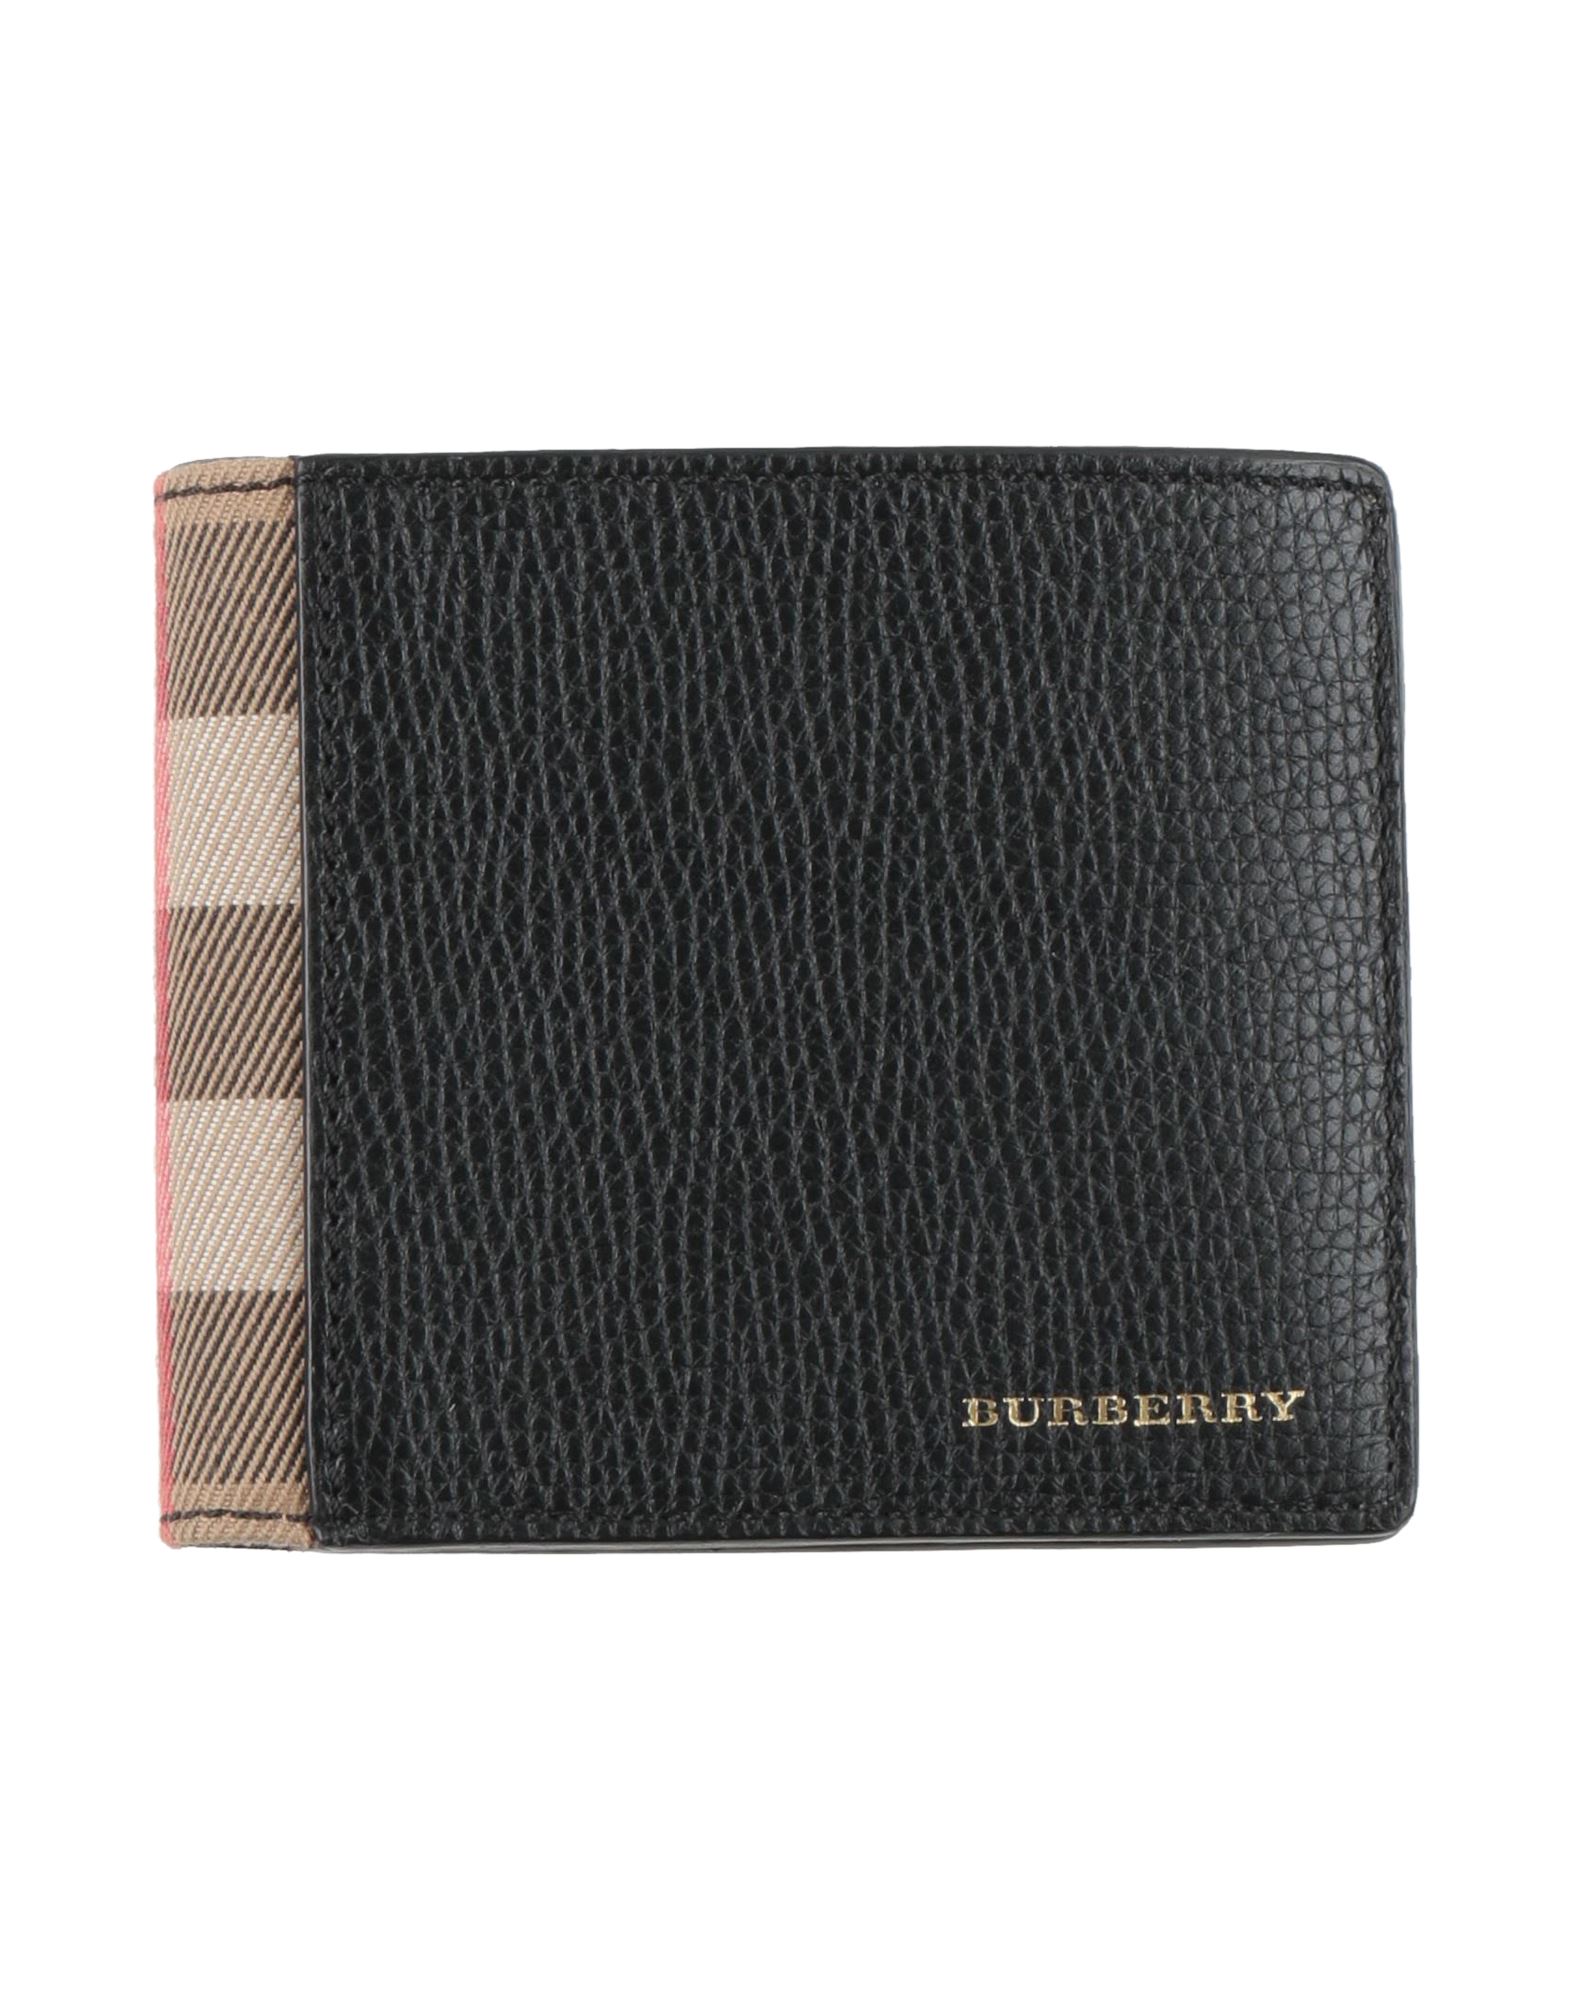 バーバリー(BURBERRY) 財布メンズ メンズ長財布 | 通販・人気 